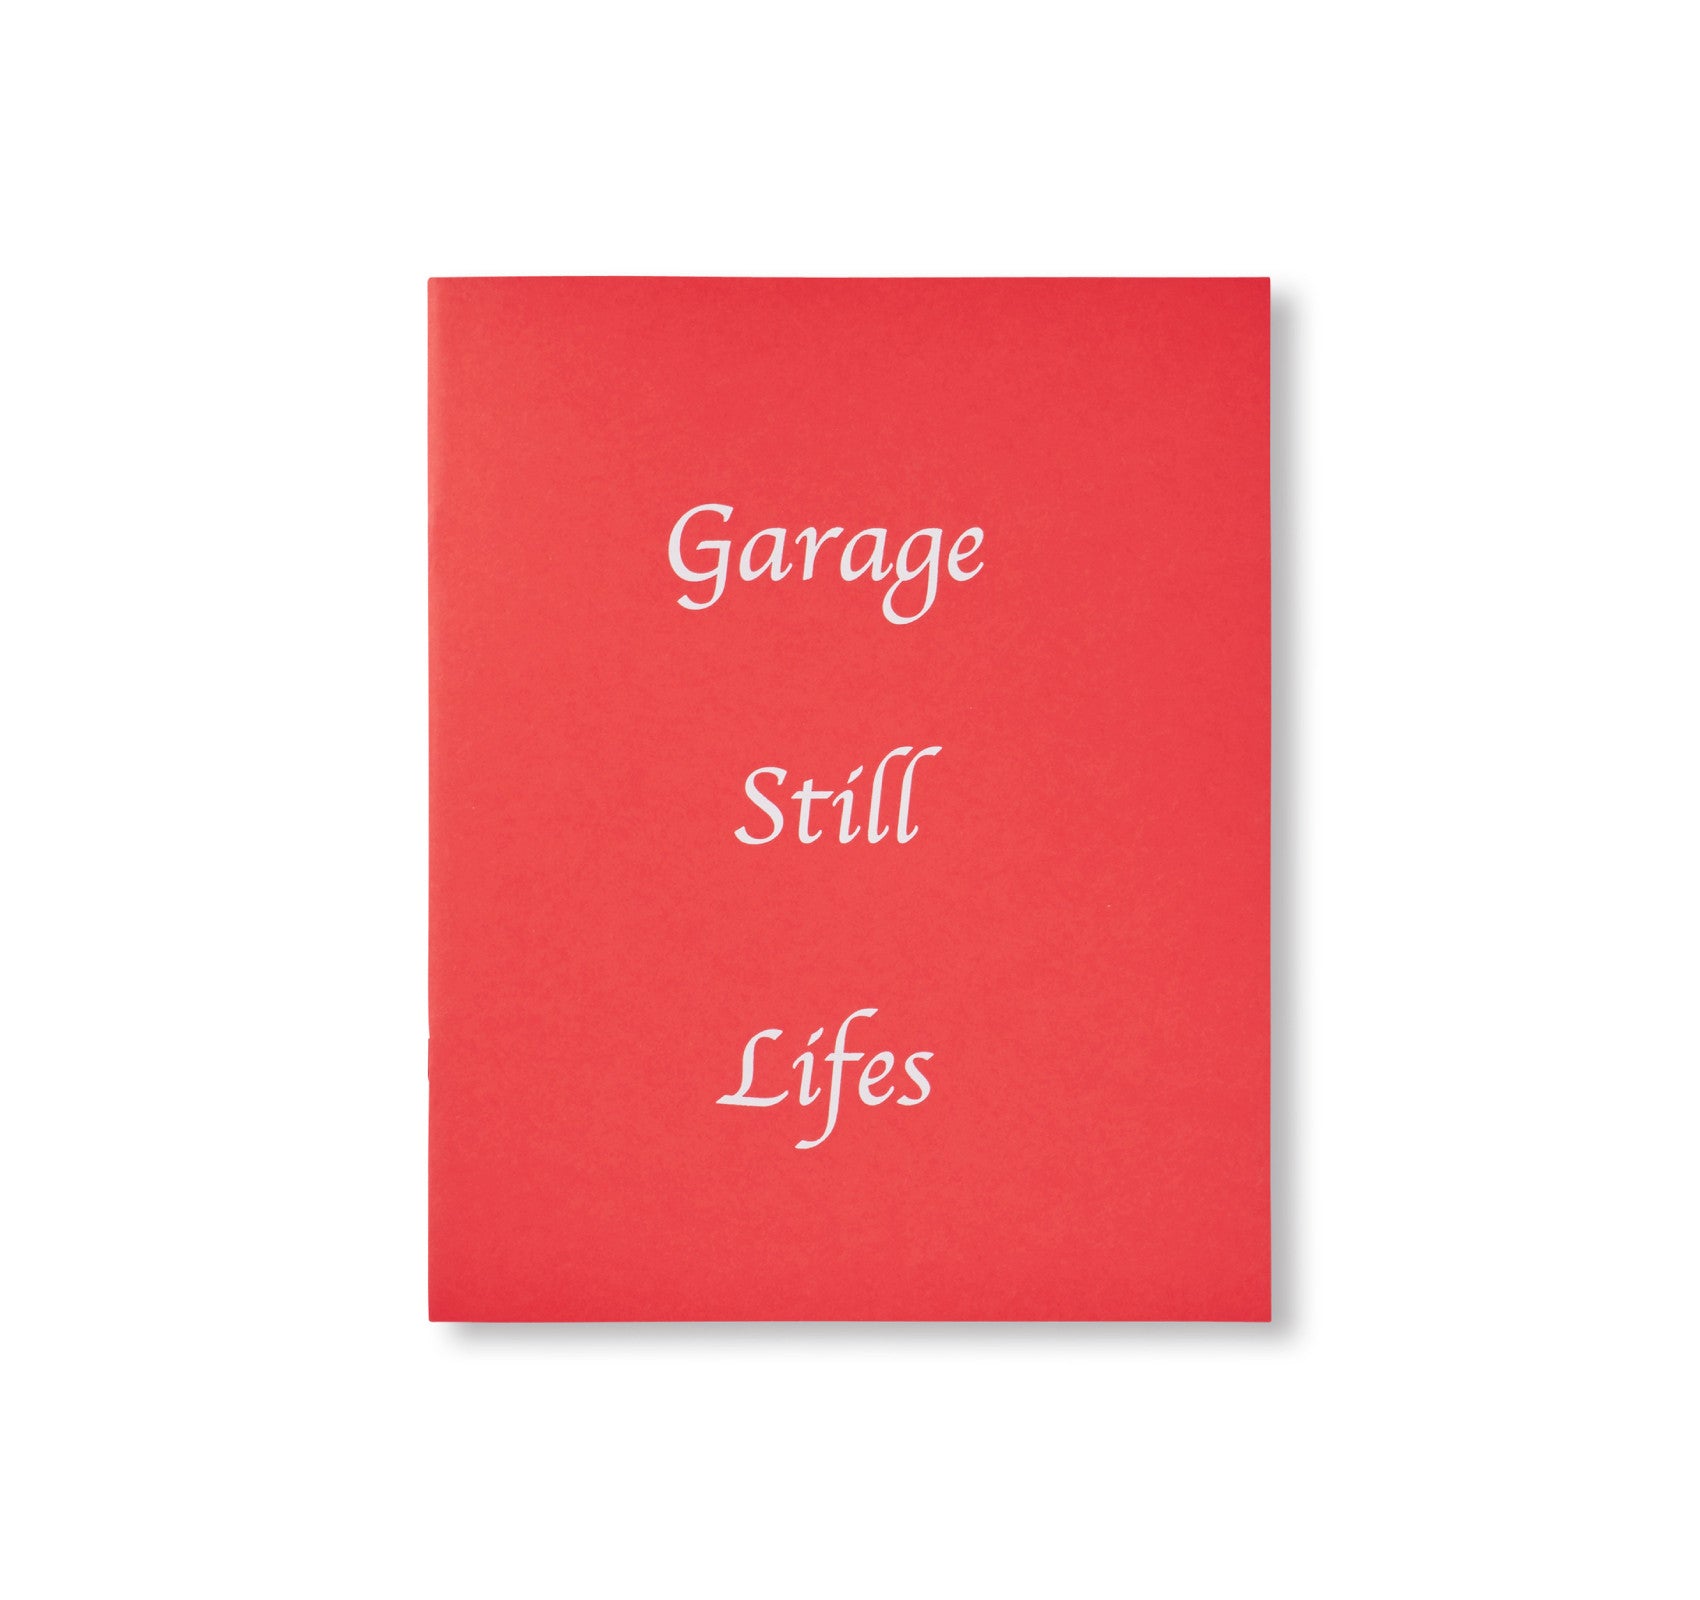 GARAGE STILL LIFES by Corey Olsen